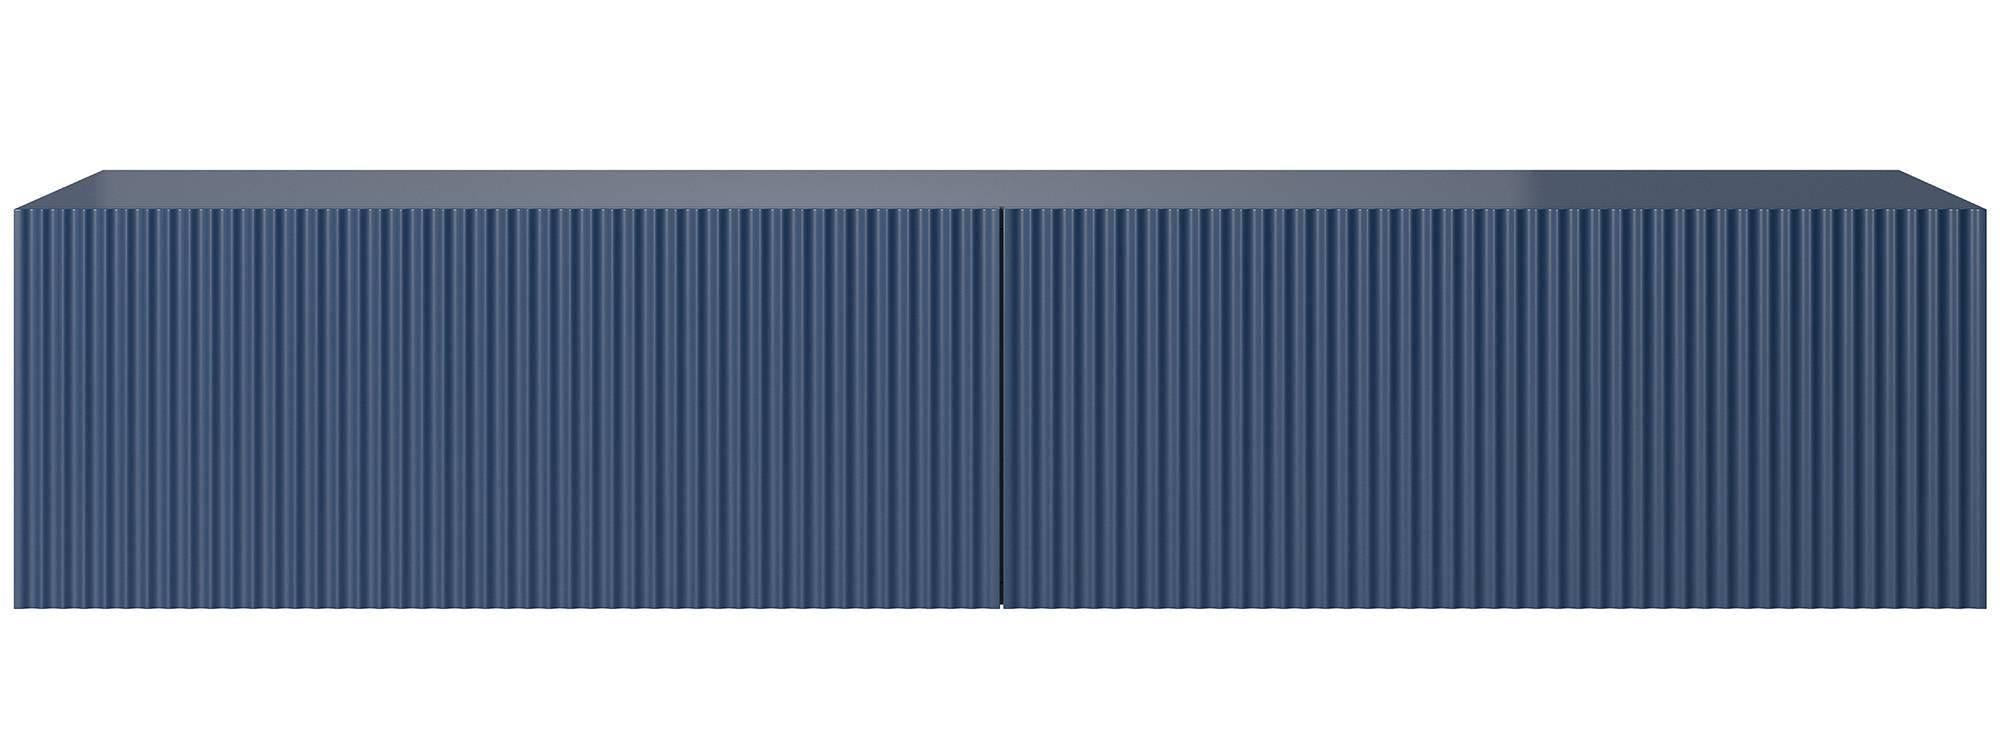 Selsey - Veldio - TV-Lowboard stehend Dunkelblau, mit gefräster Front, 140 cm breit